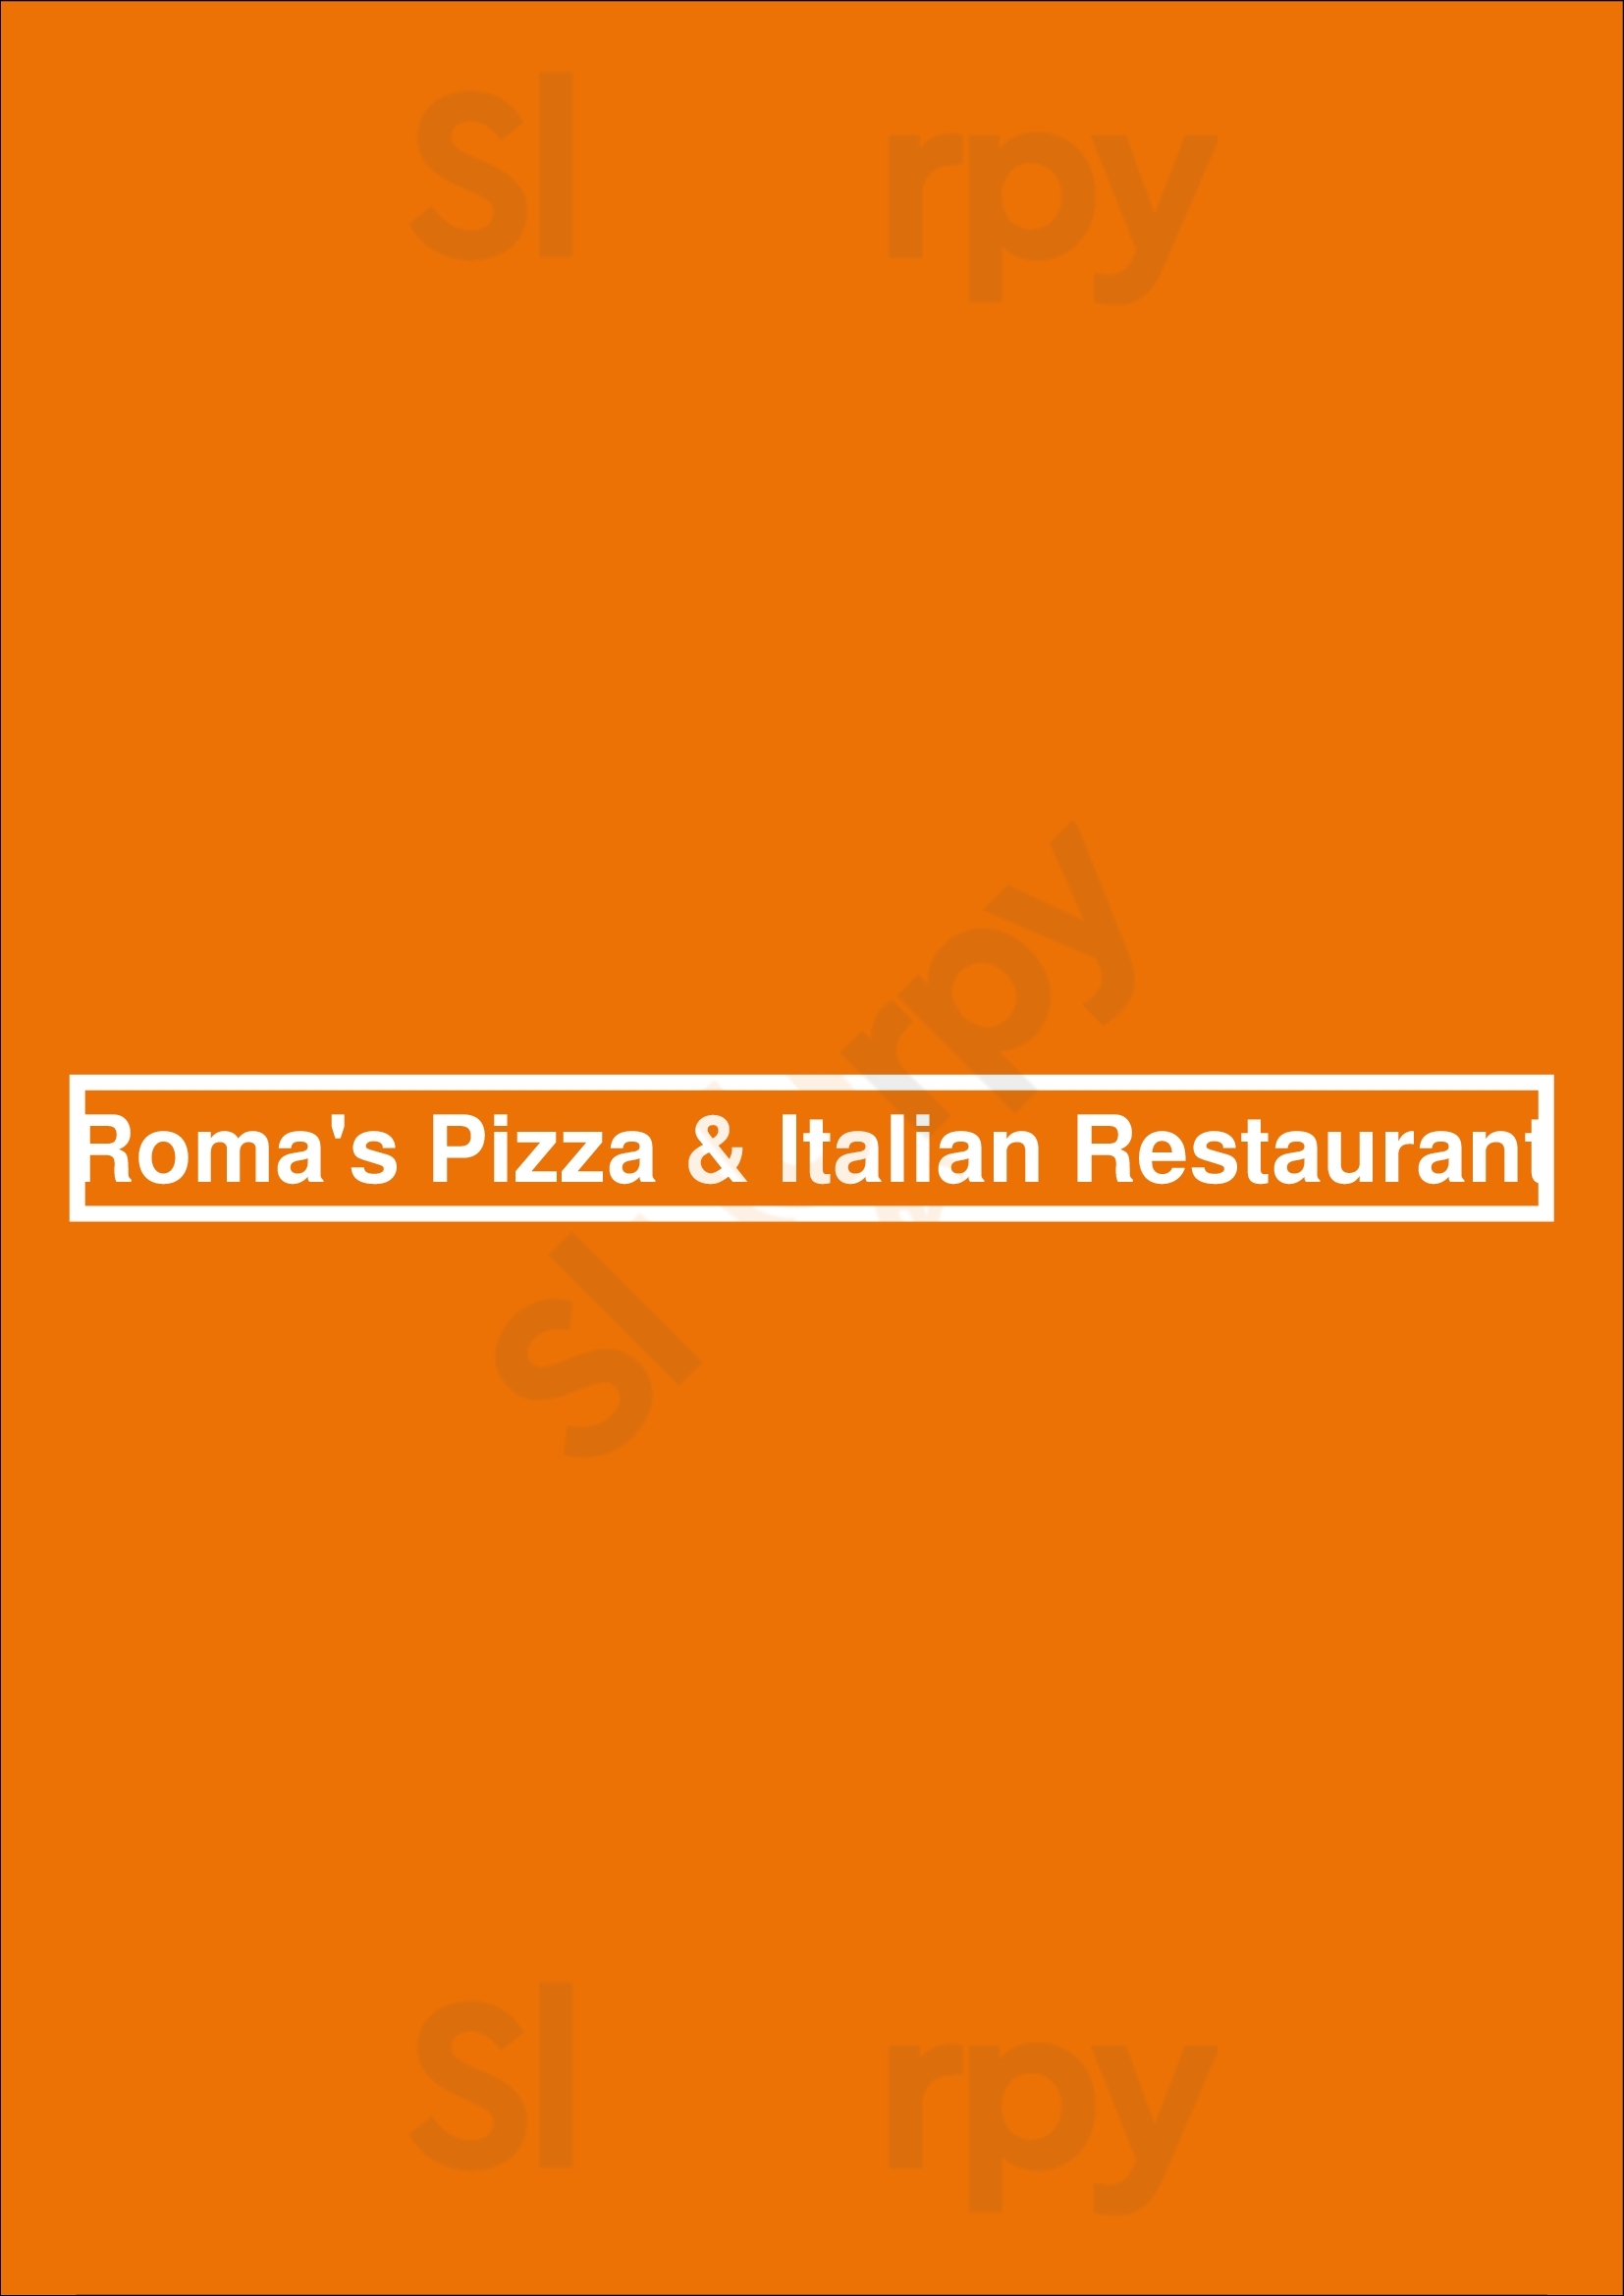 Roma's Pizza & Italian Restaurant Dallas Menu - 1